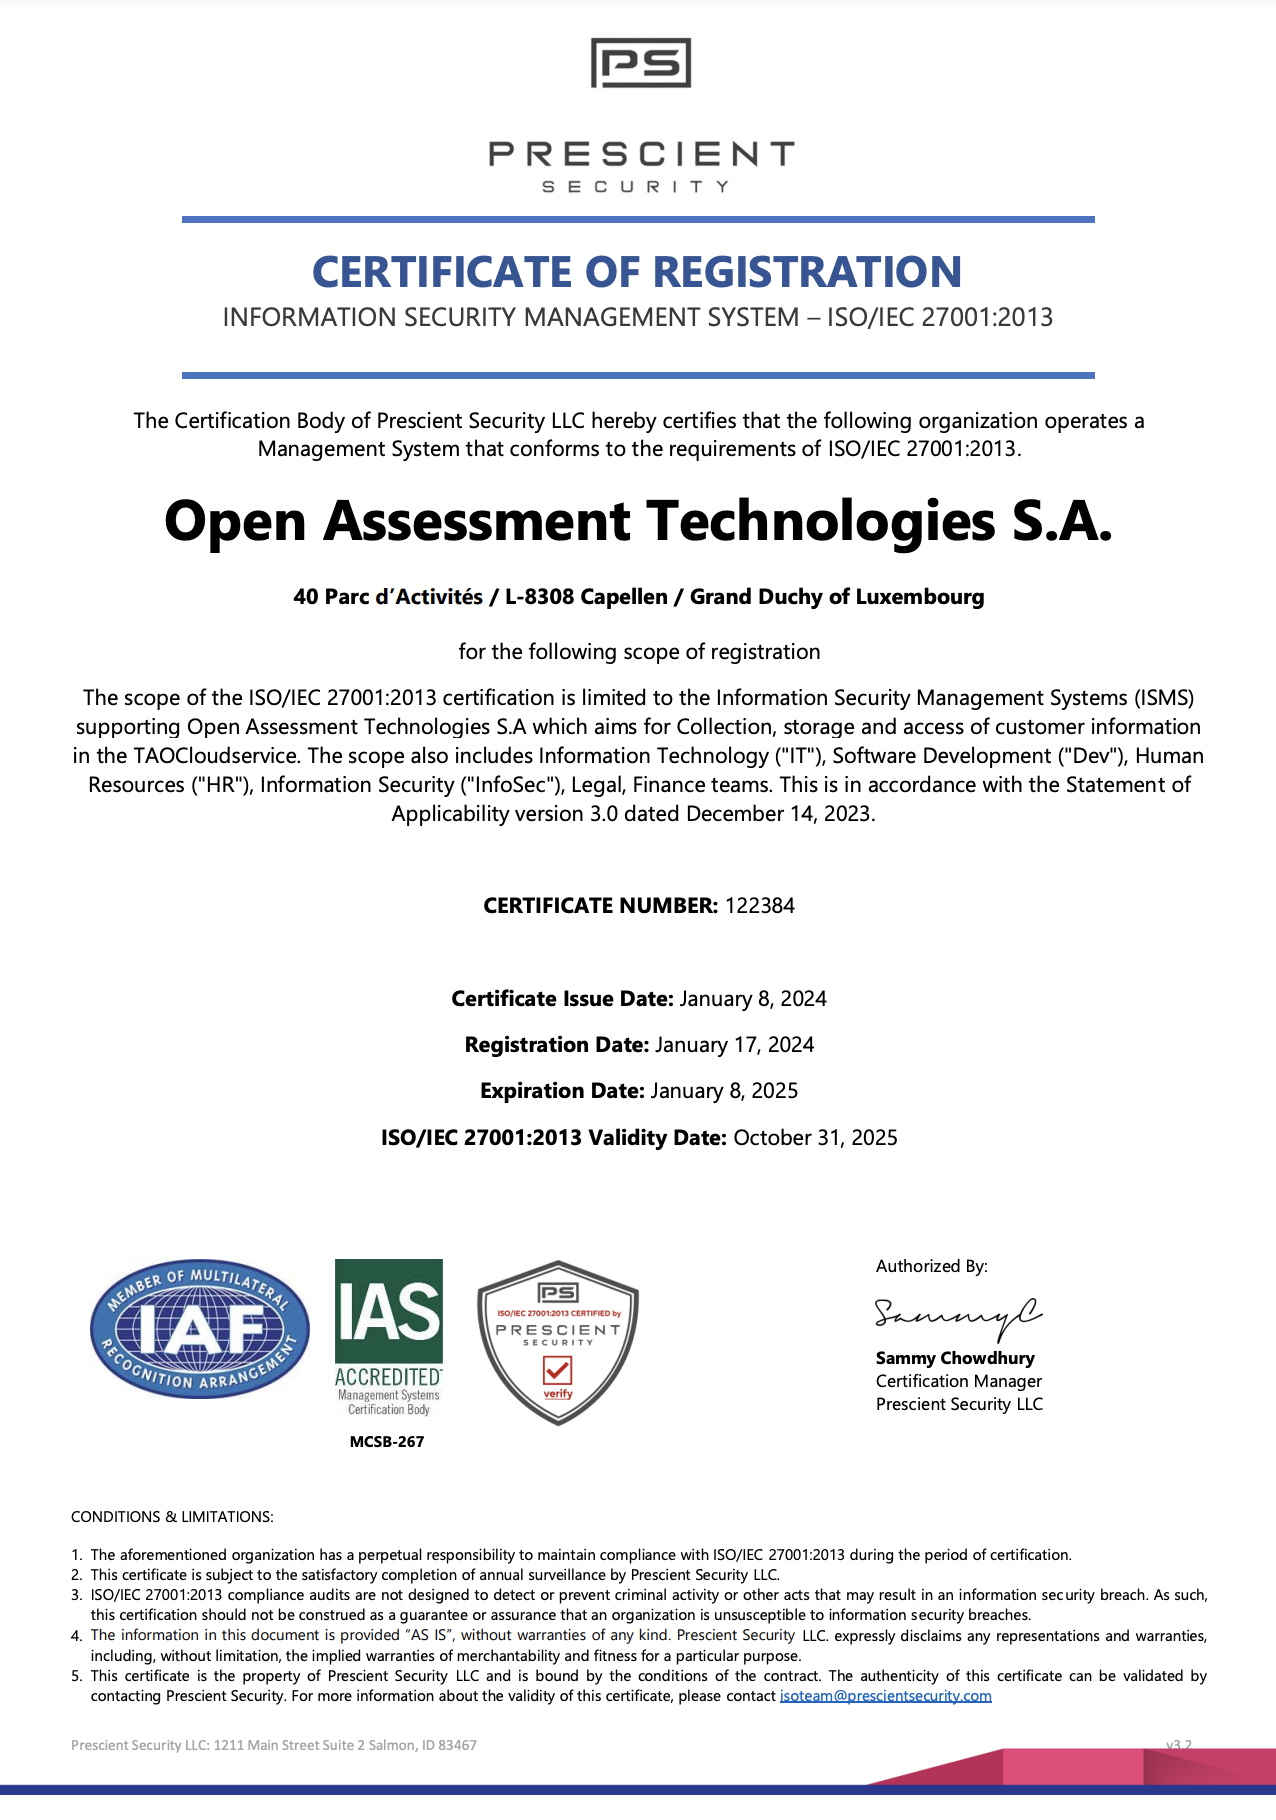 Imagen de la Certificación ISO/IEC 27001 de OAT del organismo de certificación Prescient Security LLC, IAS, IAS Accredited.